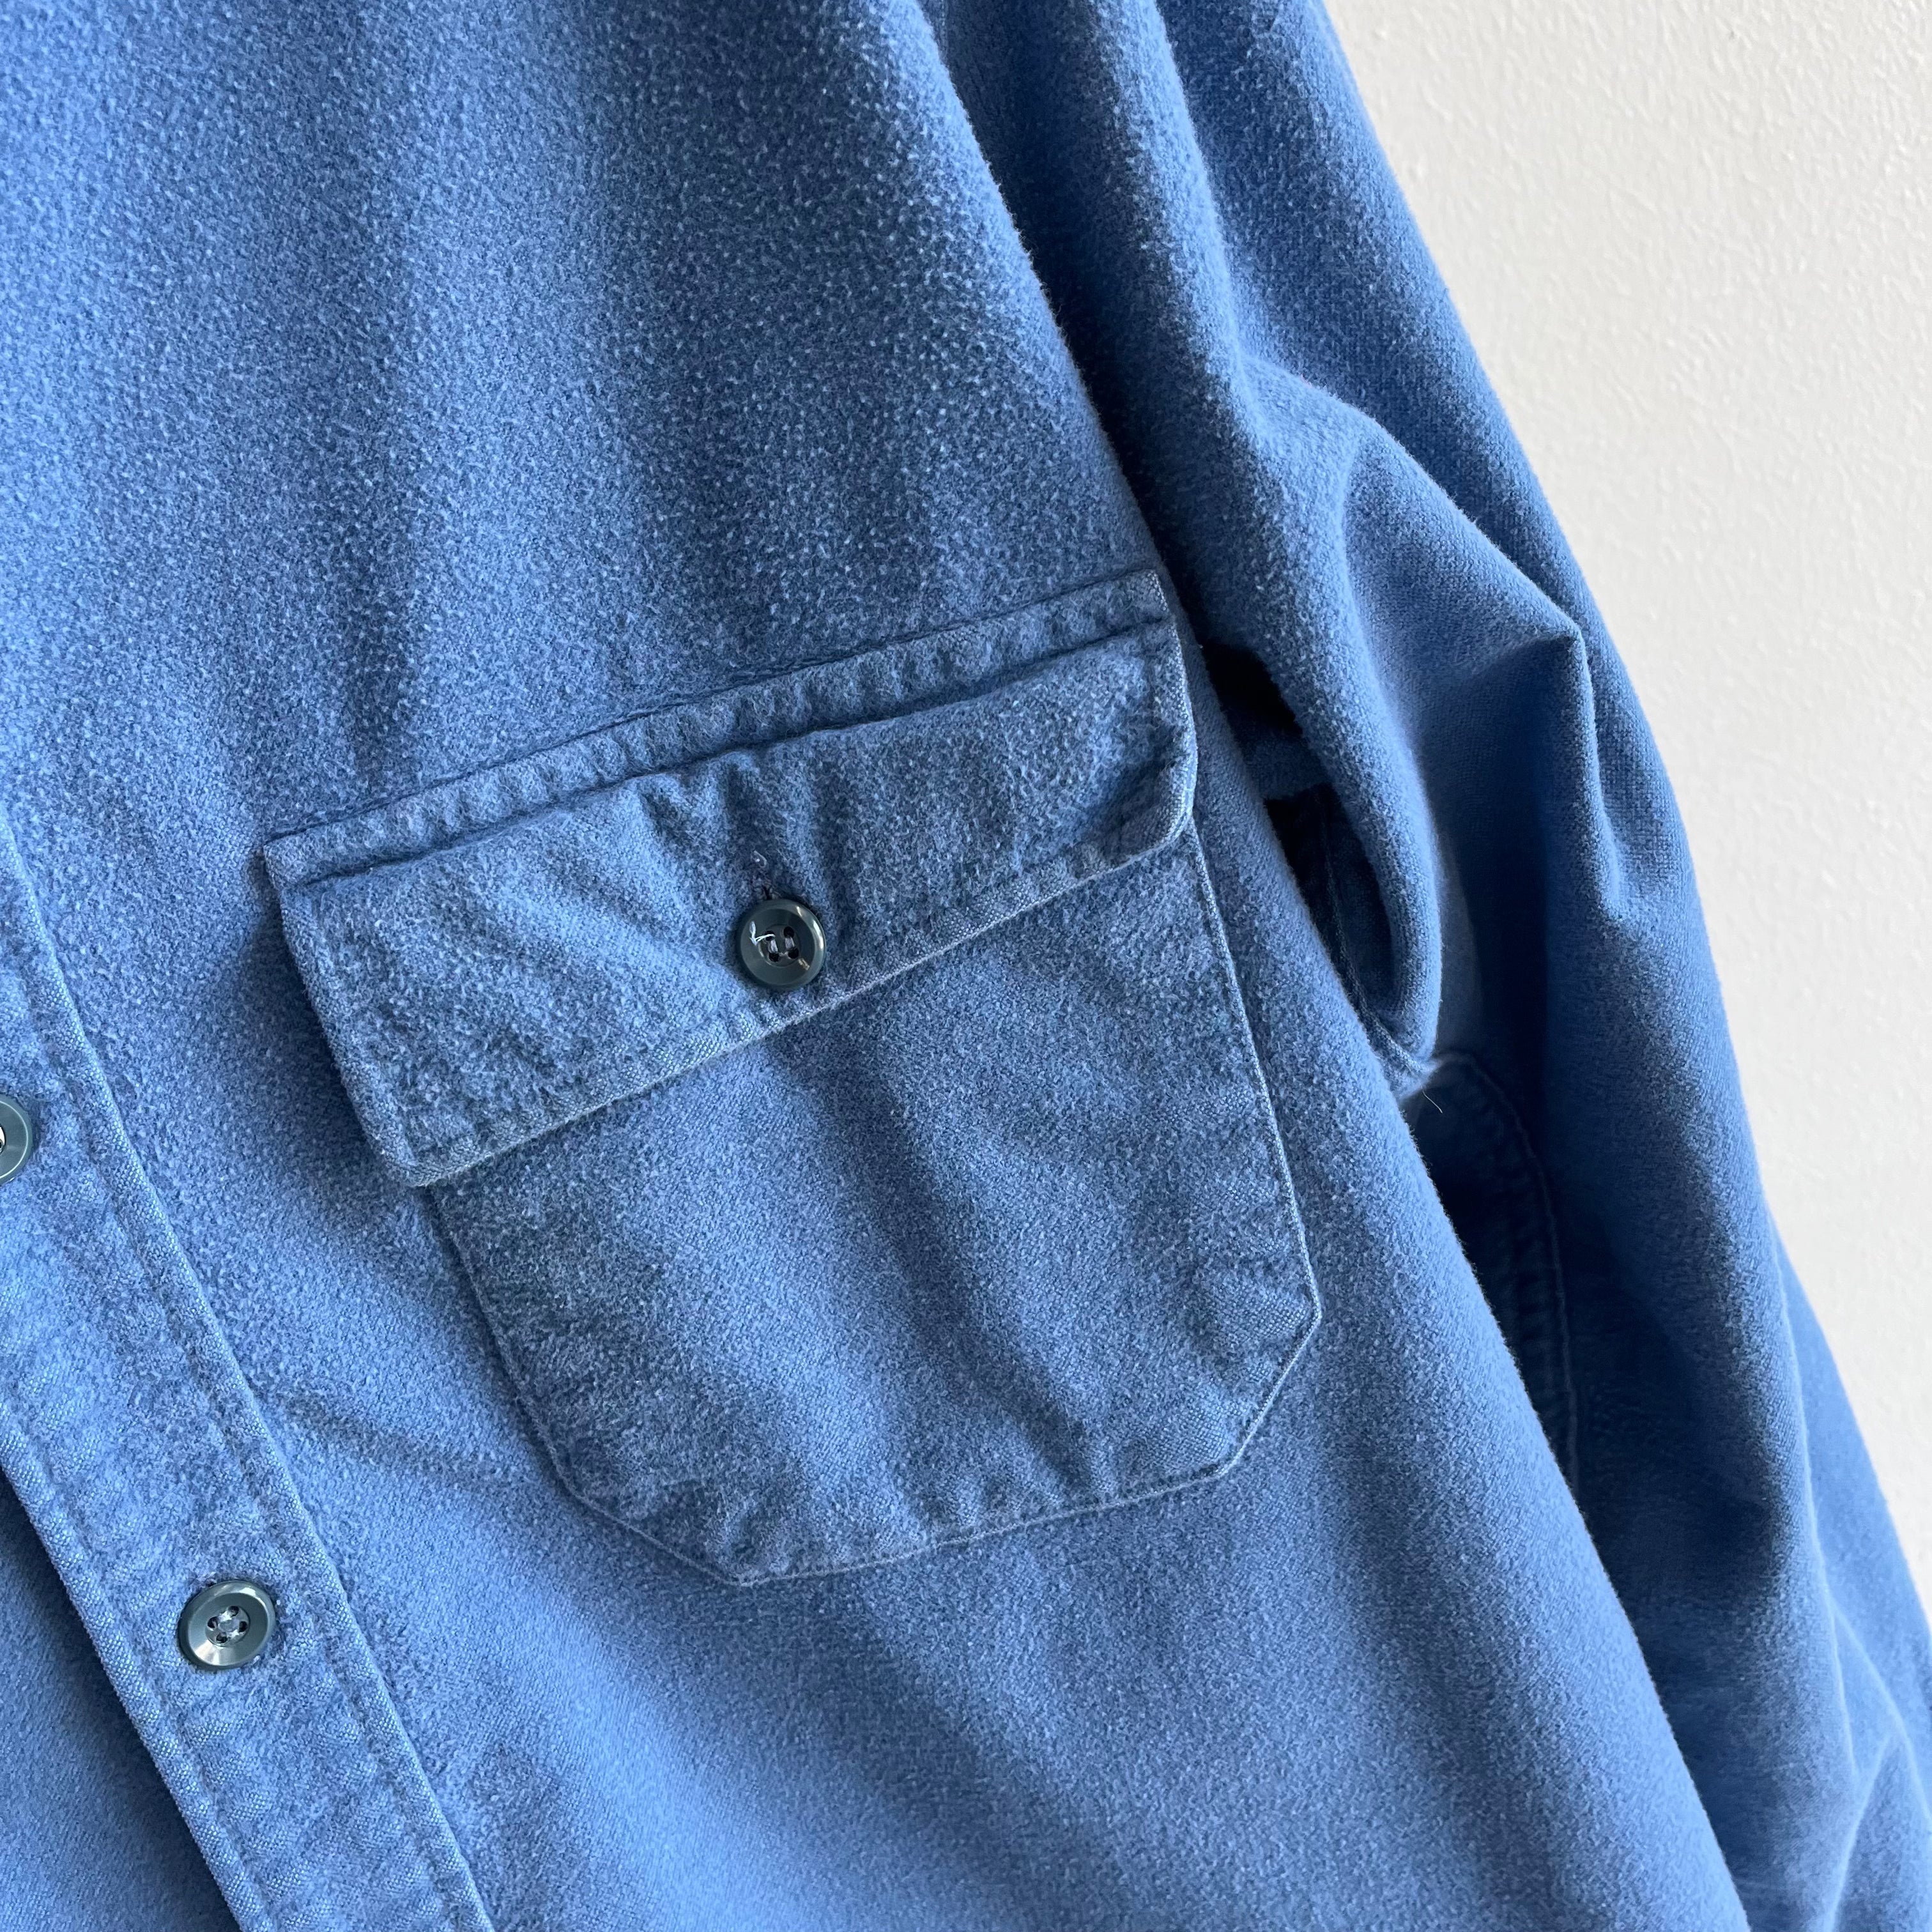 1980s L.L.Bean Soft Dusty Blue Cotton Flannel